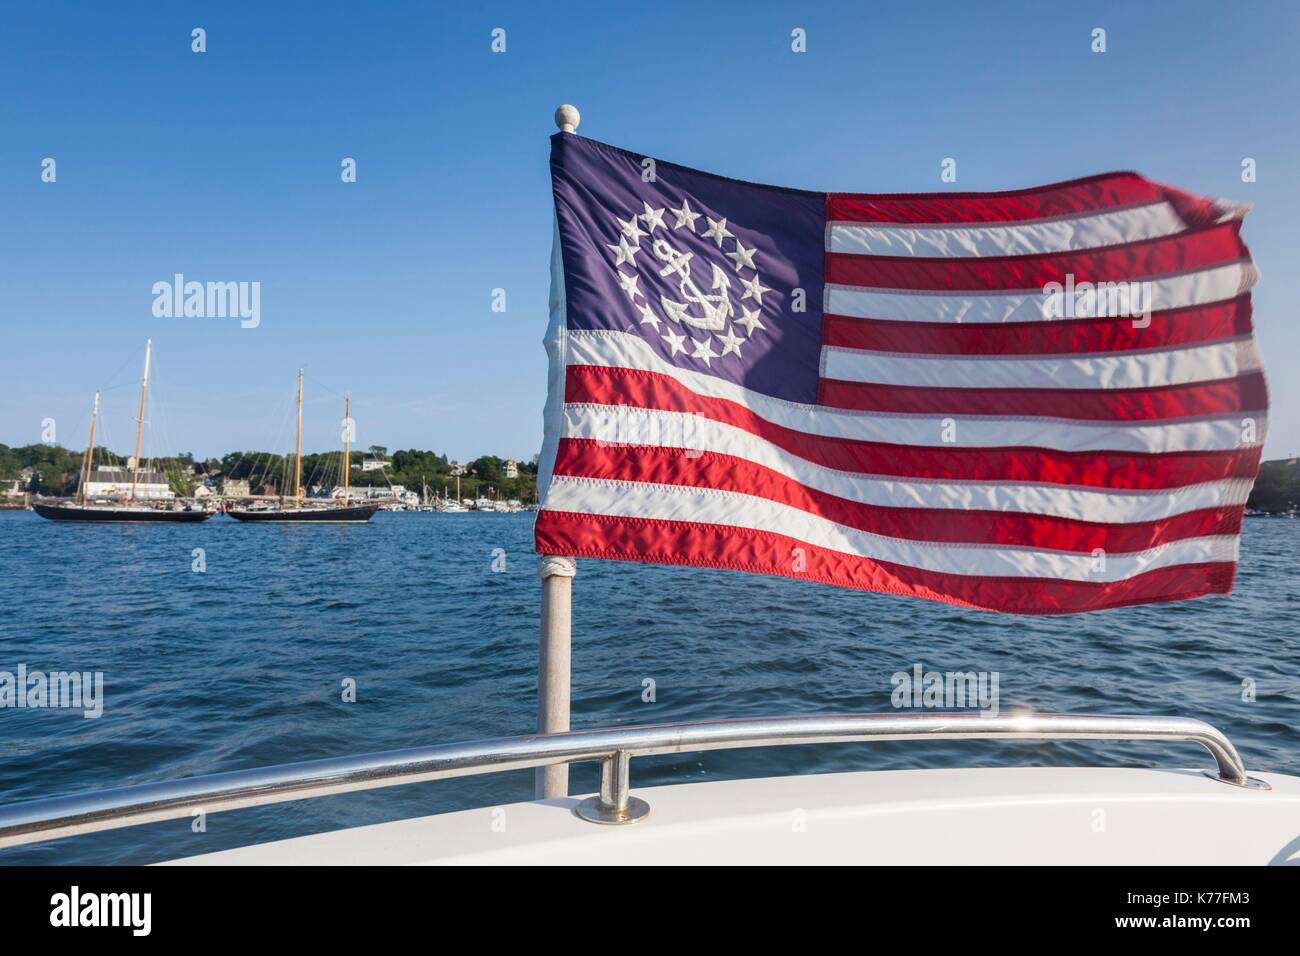 United States, Massachusetts, Cape Ann, Gloucester, America's Oldest Seaport, Gloucester Schooner Festival, schooner US flag Stock Photo